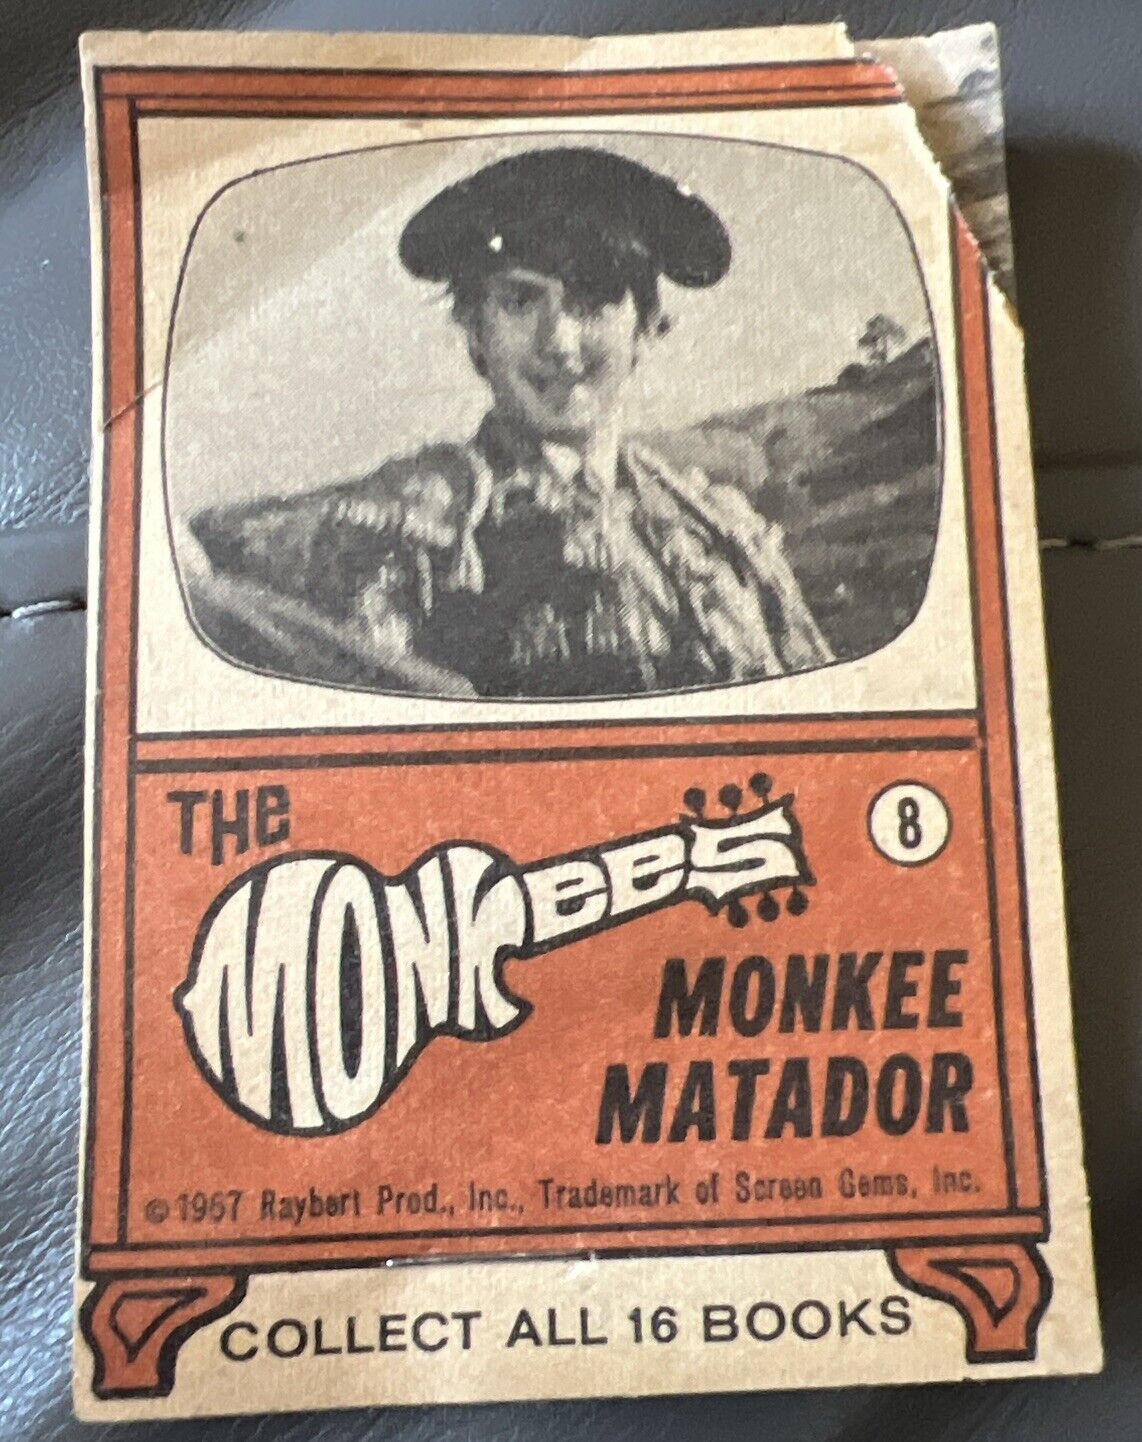 VINTAGE 1967 TOPPS THE MONKEES FLIP BOOK #8 OF 16 MONKEE MATADOR SET BREAK HTF